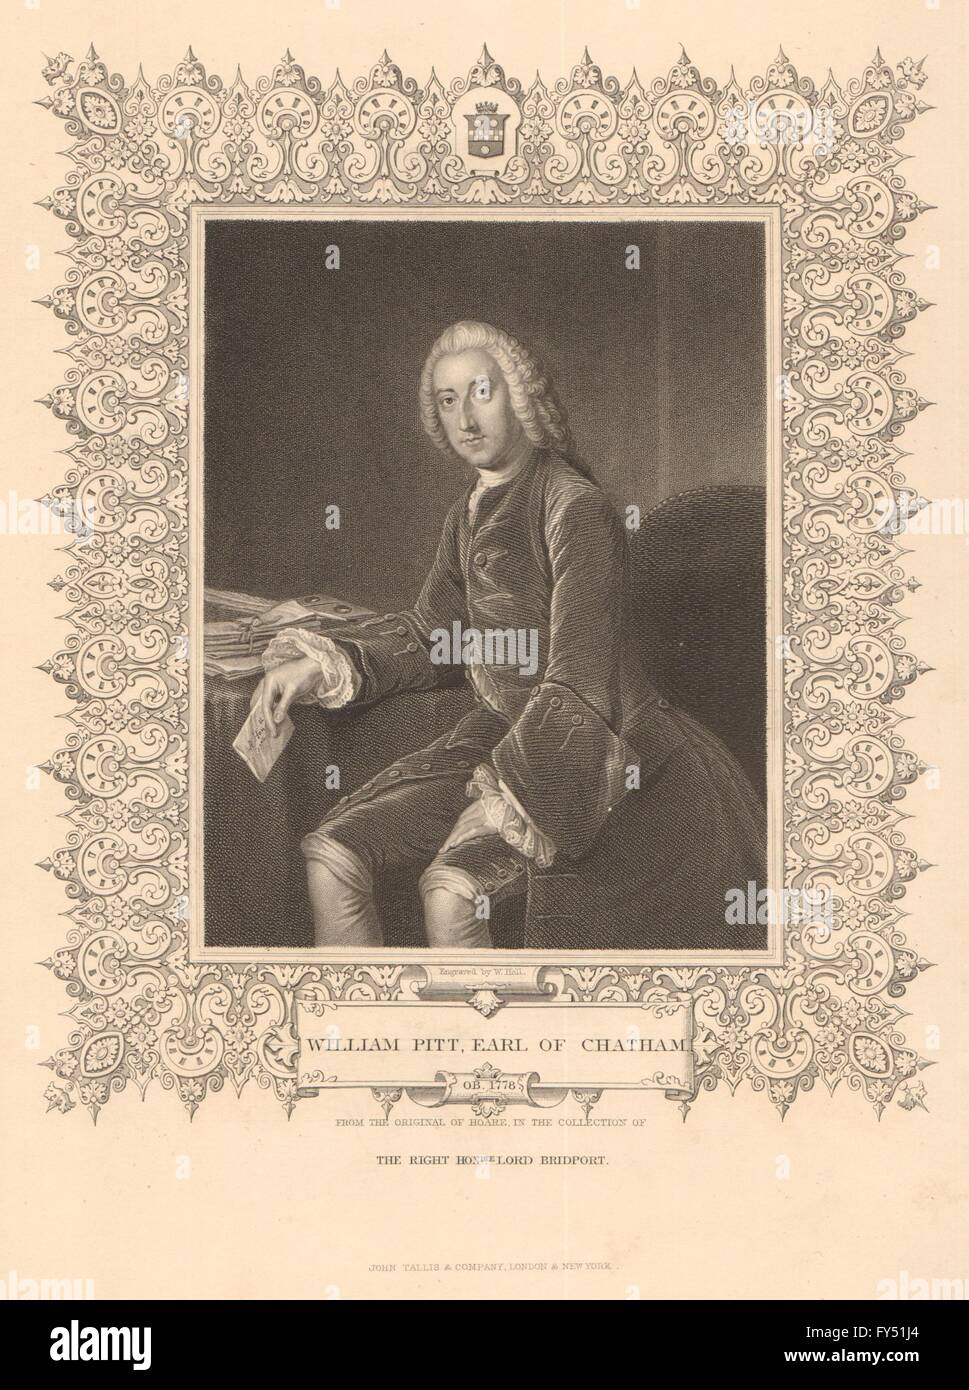 L'histoire britannique. William Pitt, comte de Chatham. Pitt l'ancien. TALLIS, 1849 Banque D'Images